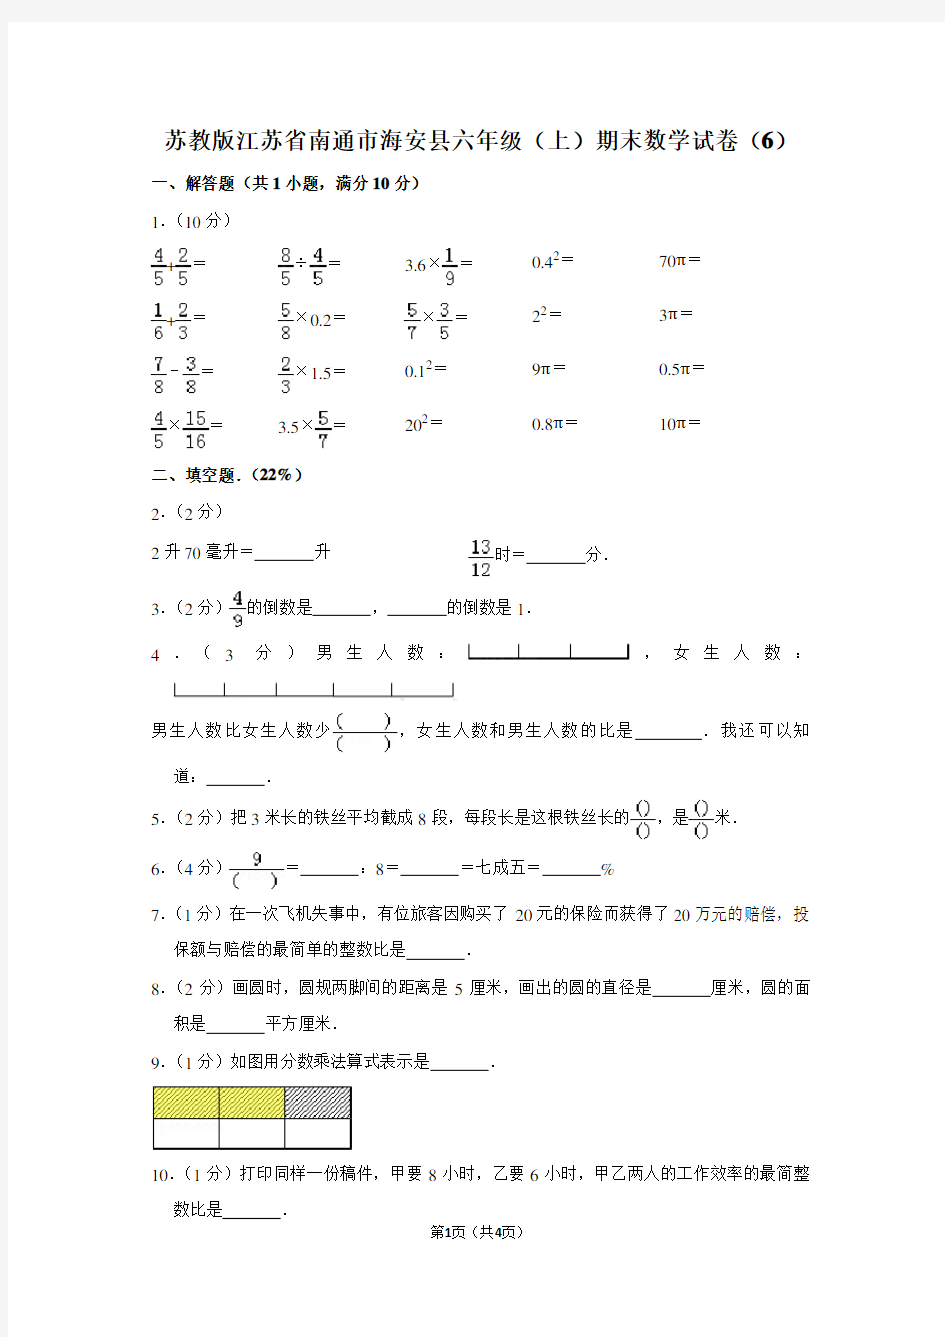 苏教版江苏省南通市海安县六年级(上)期末数学试卷(6) (2)